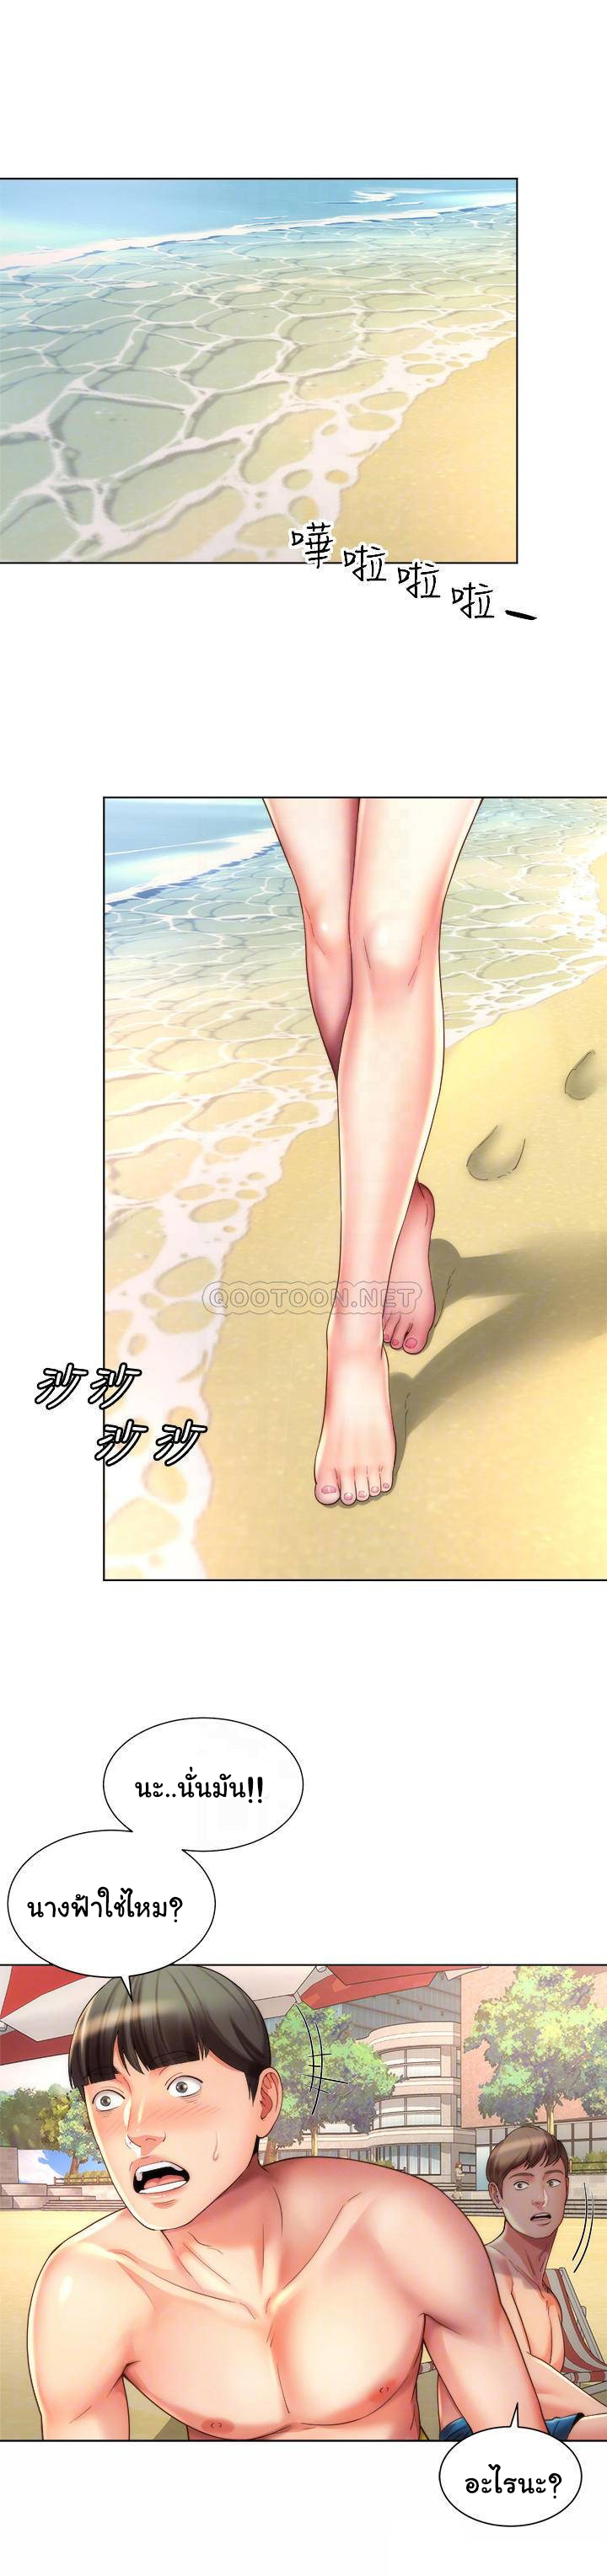 Beach Goddess 37 03